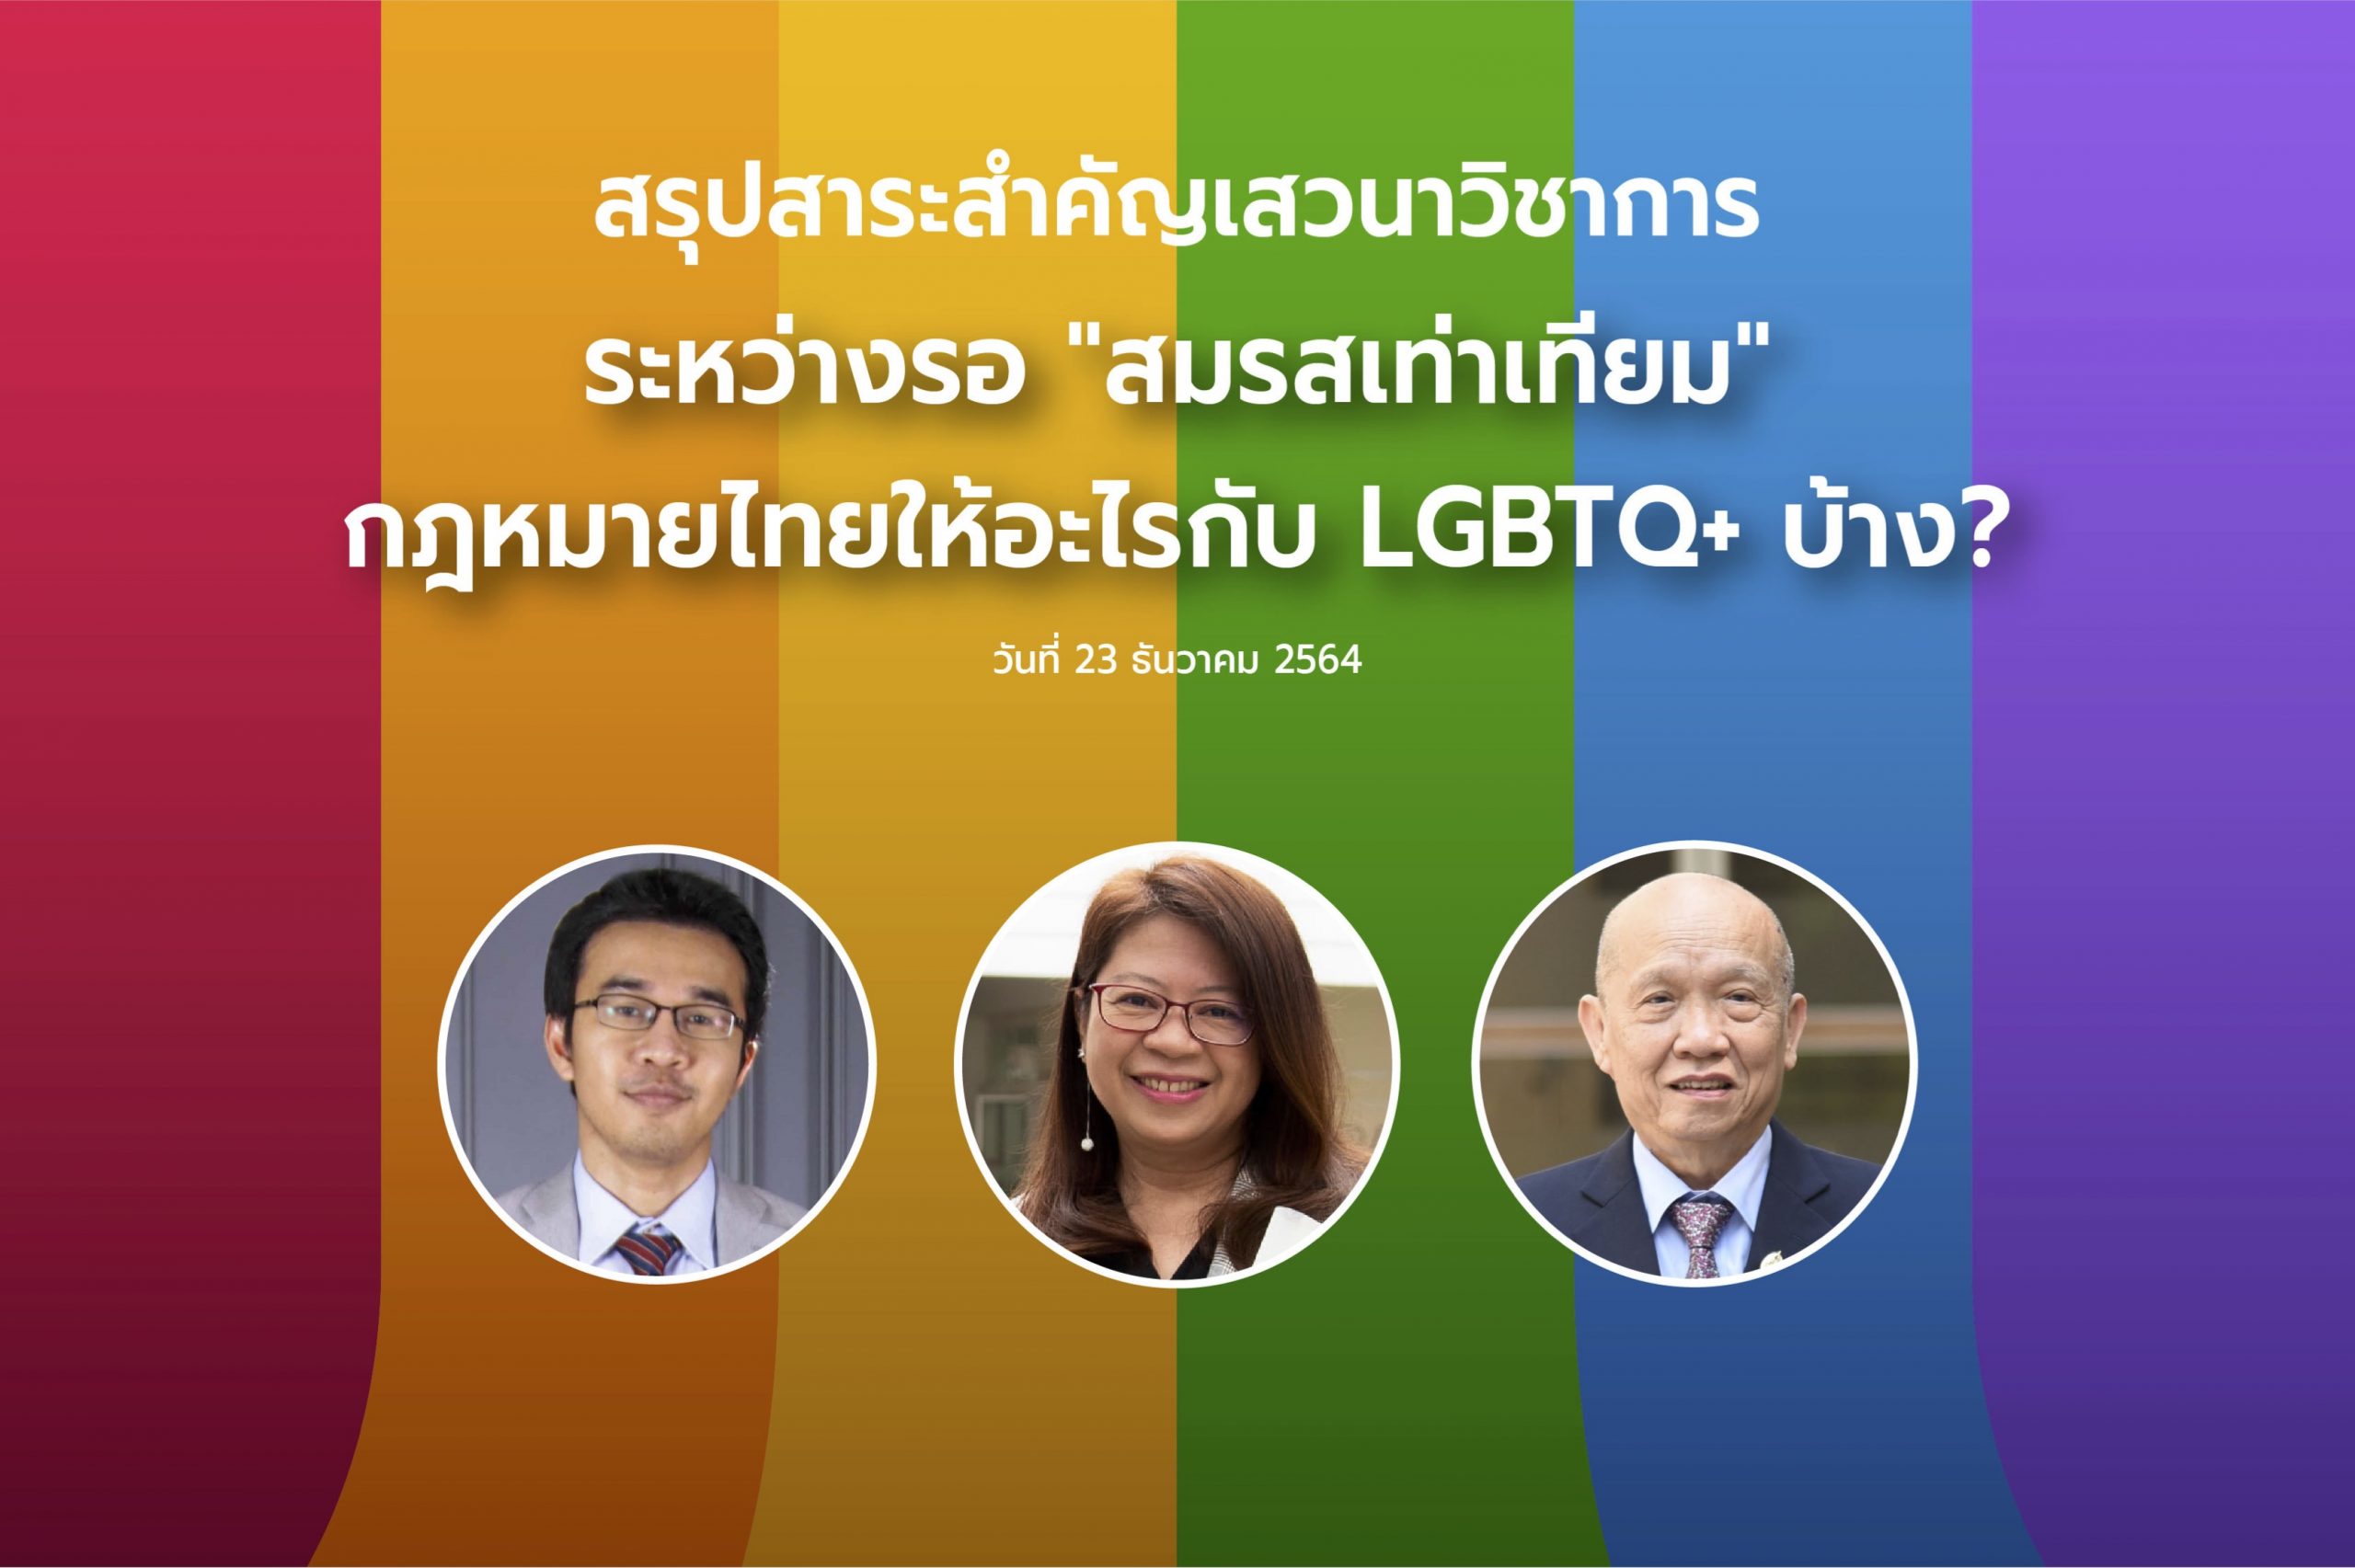 สรุปสาระสำคัญจากเสวนาวิชาการ “ระหว่างรอ “สมรสเท่าเทียม” กฎหมายไทยให้อะไรกับ LGBTQ+ บ้าง?”